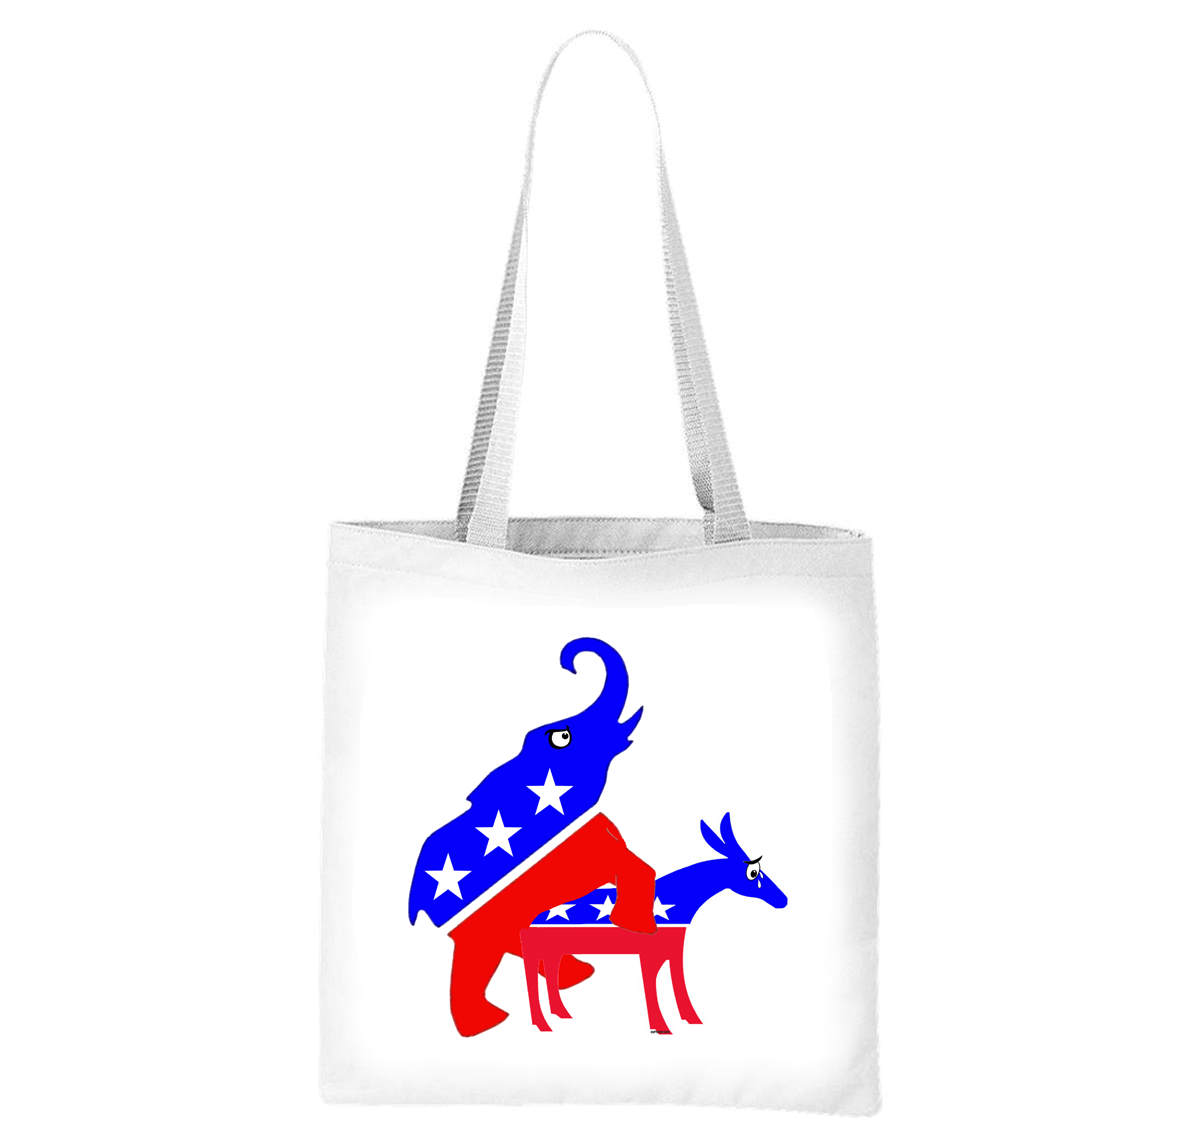 Funny Republican Elephant Humps Democrat Donkey Liberty Bag